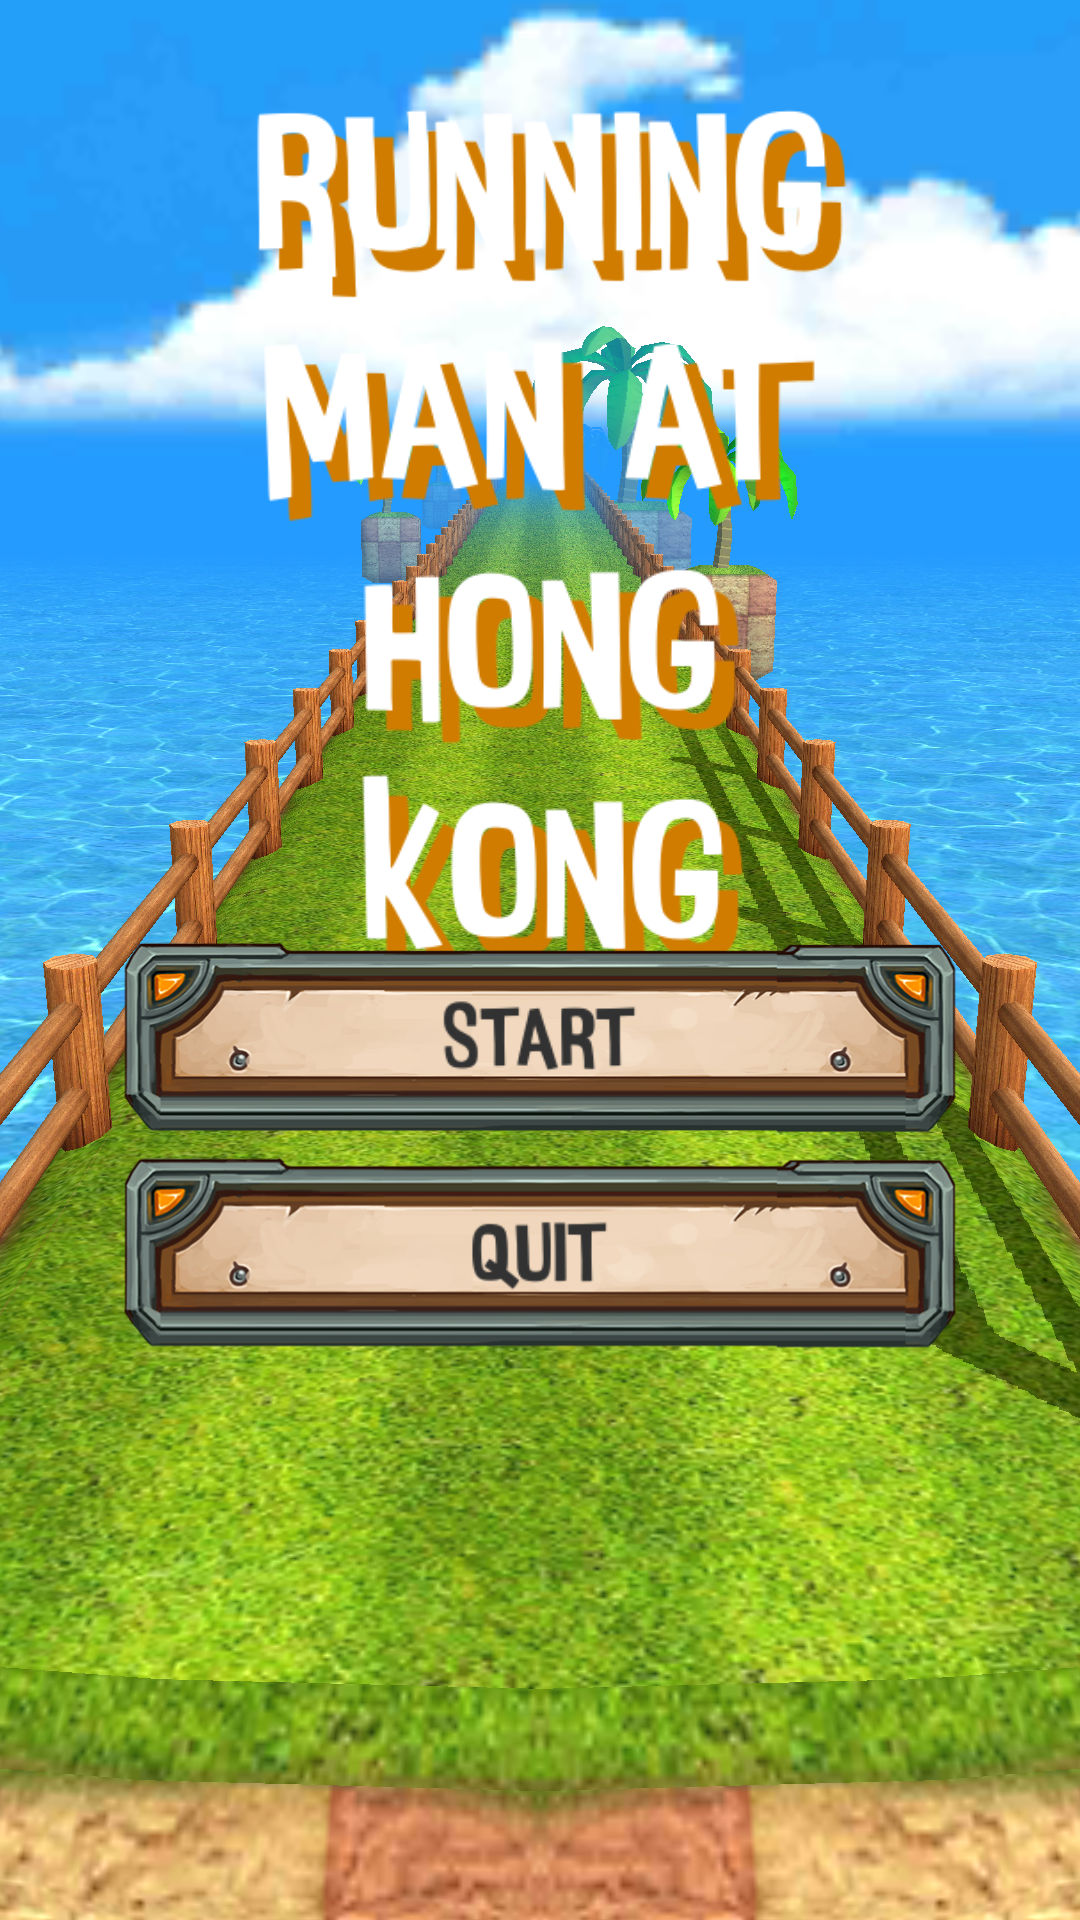 Screenshot 1 of Running Man di Hong Kong Saya berlari bersama Hong Kong 1.2